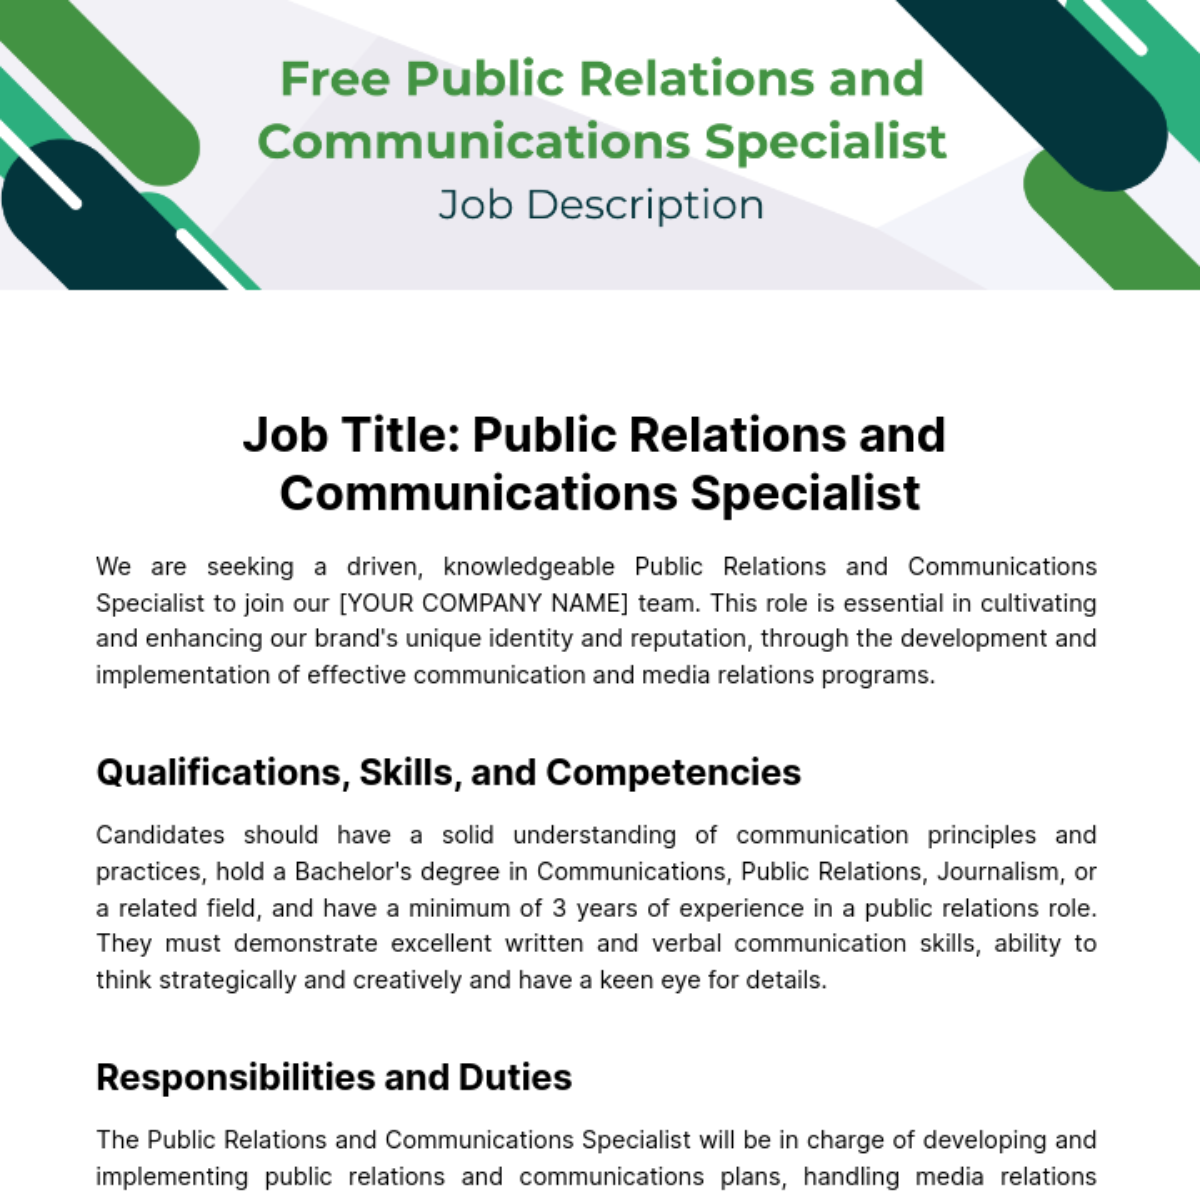 Public Relations (PR) and Communications Specialist Job Description Template